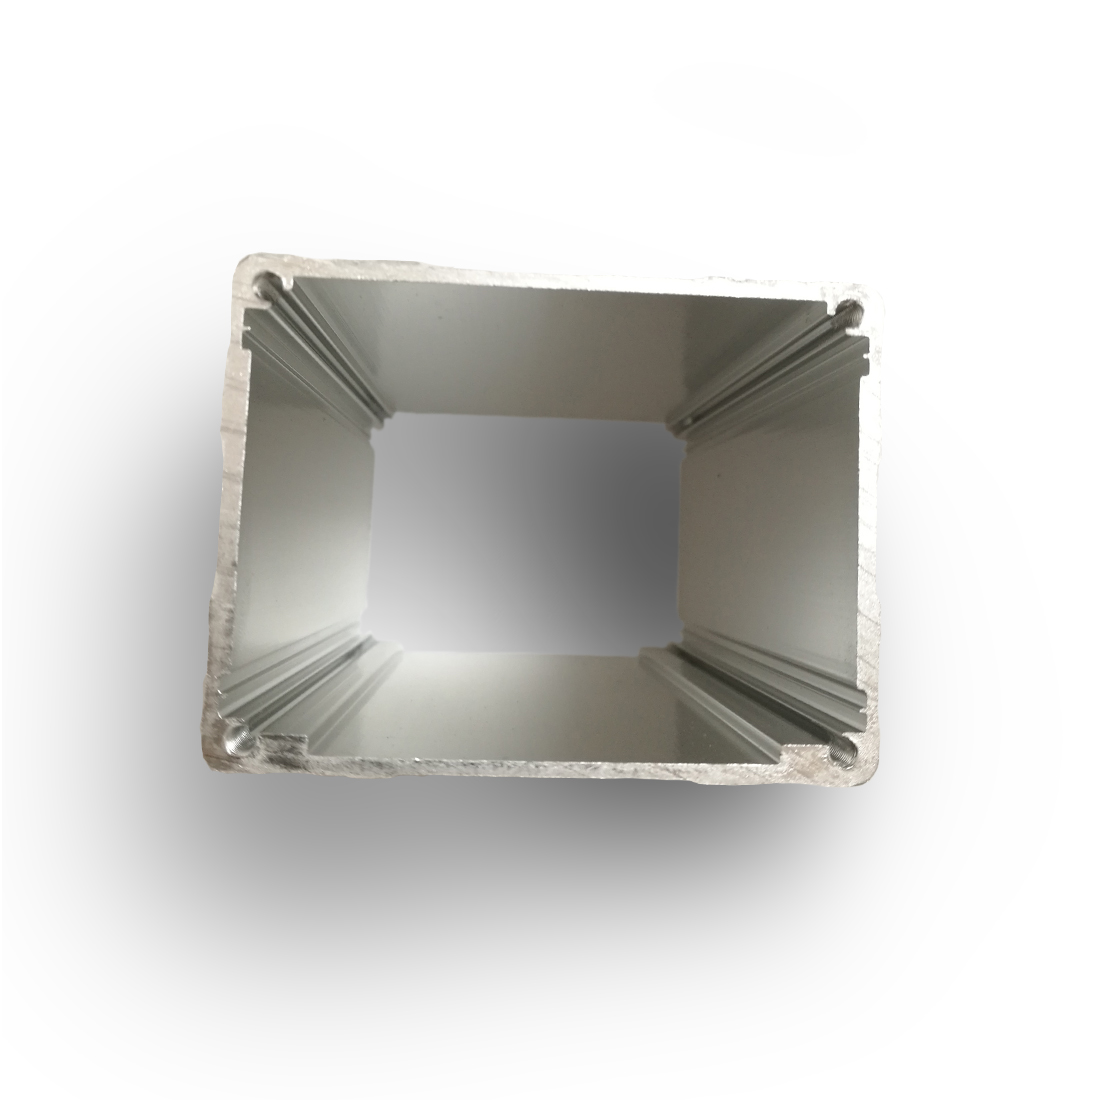 65*50*100mm Aluminum Enclosure PCB Instrument Case Electronics Enclosure Box Desktop DIY